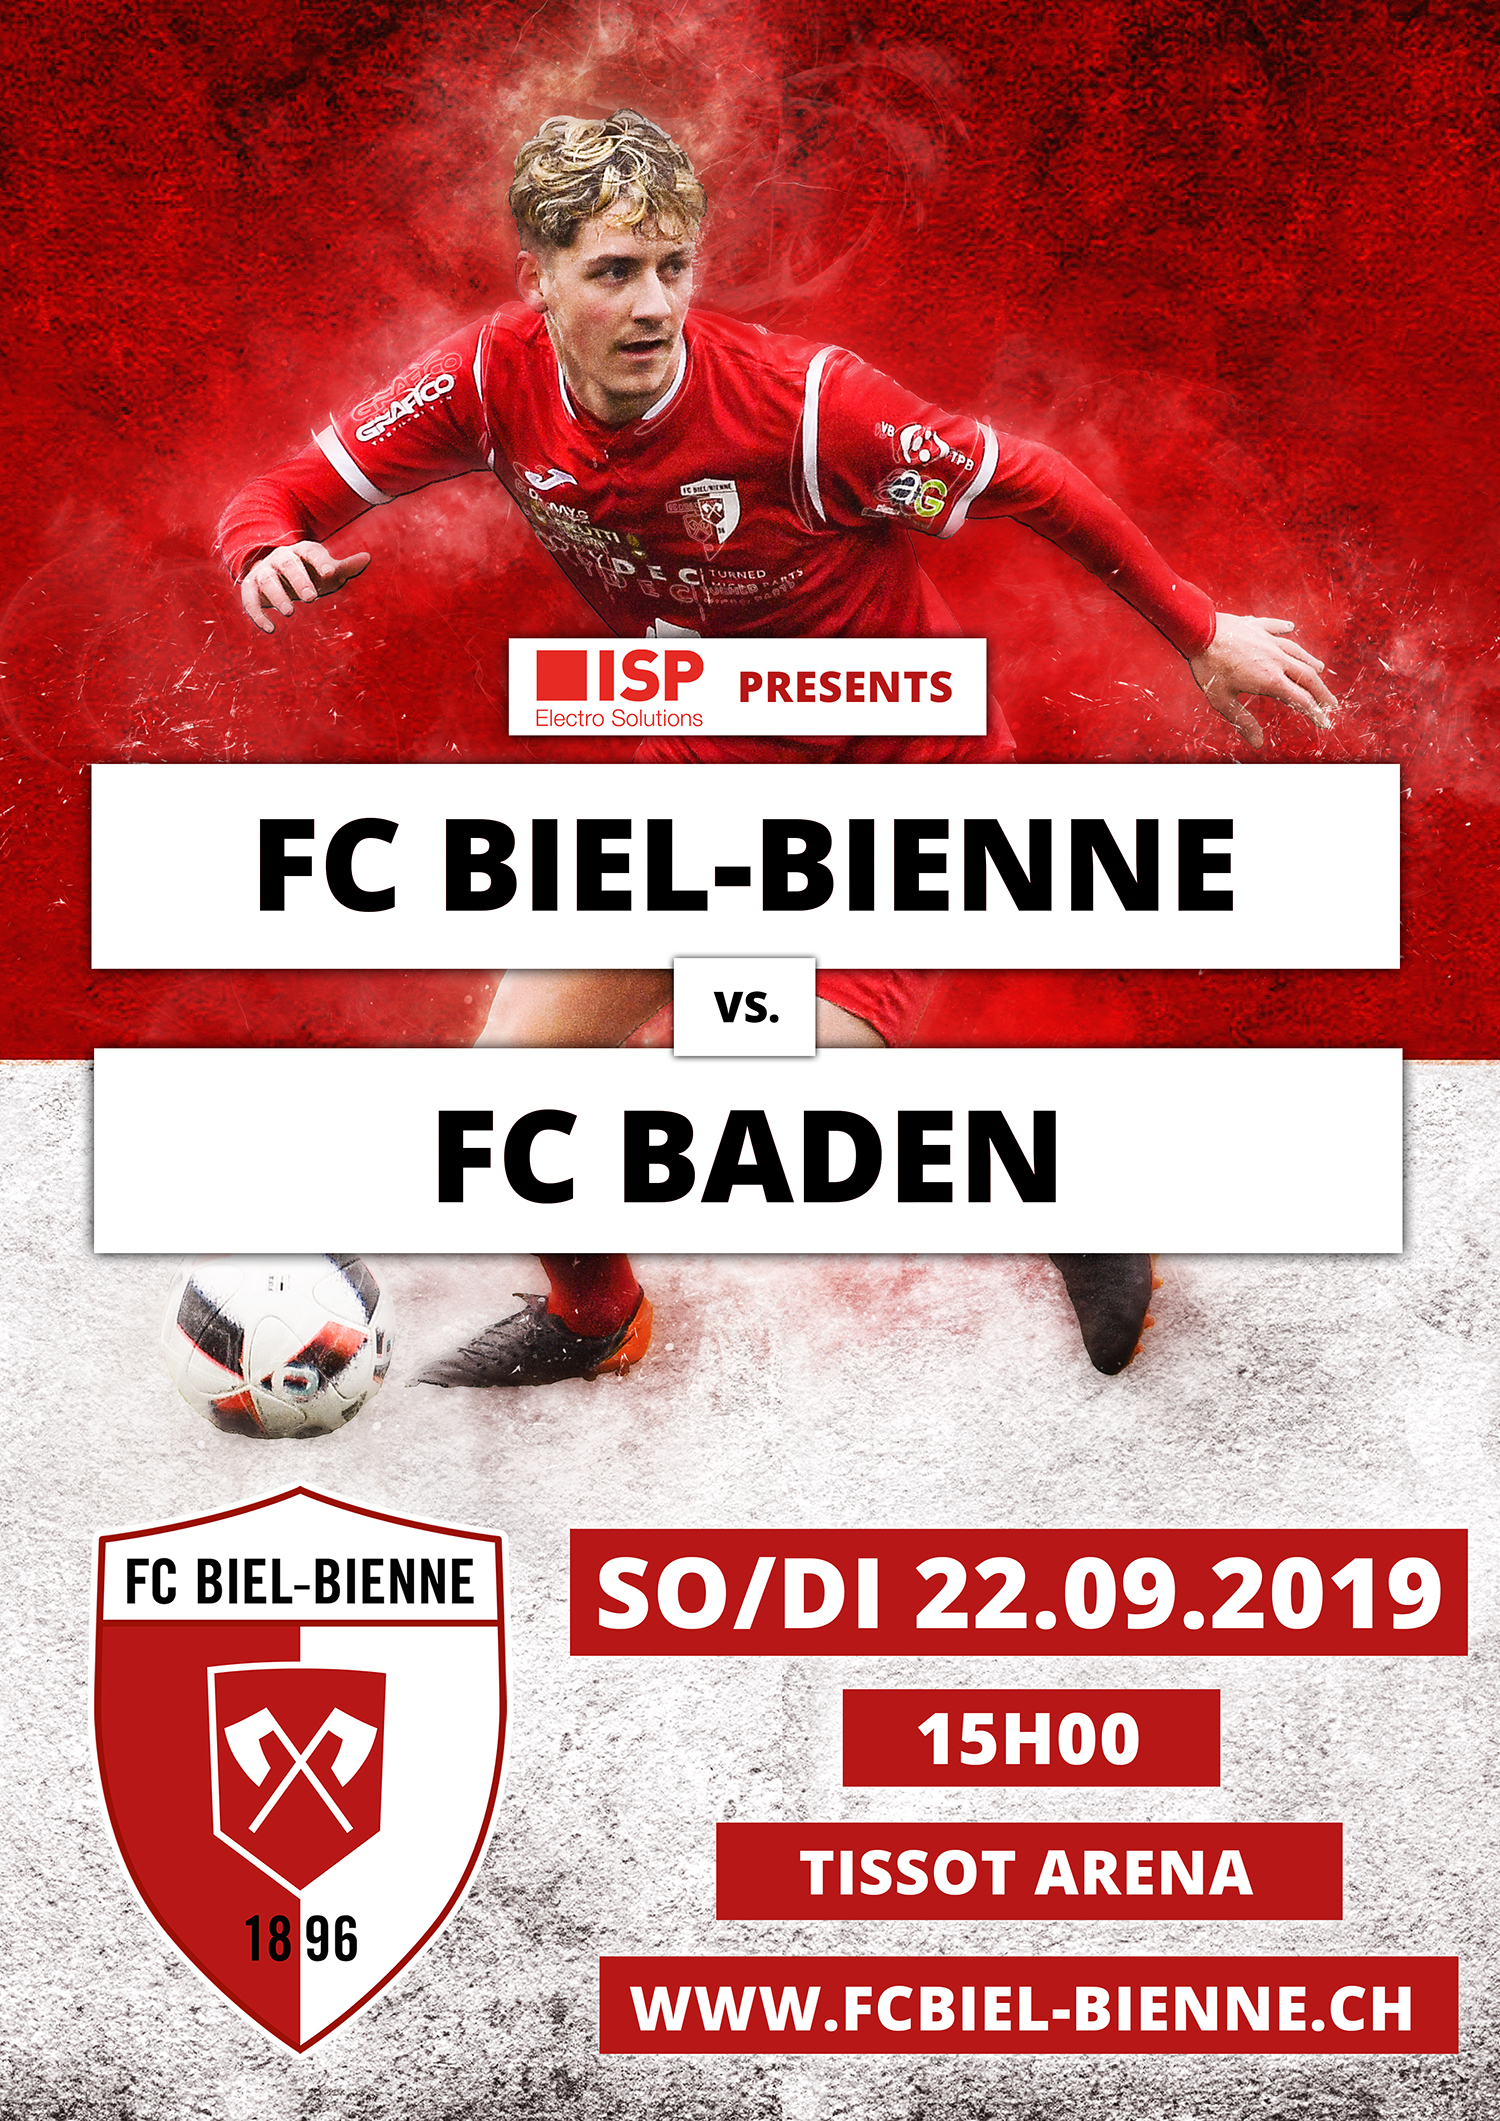 FC Biel-Bienne vs. FC Baden